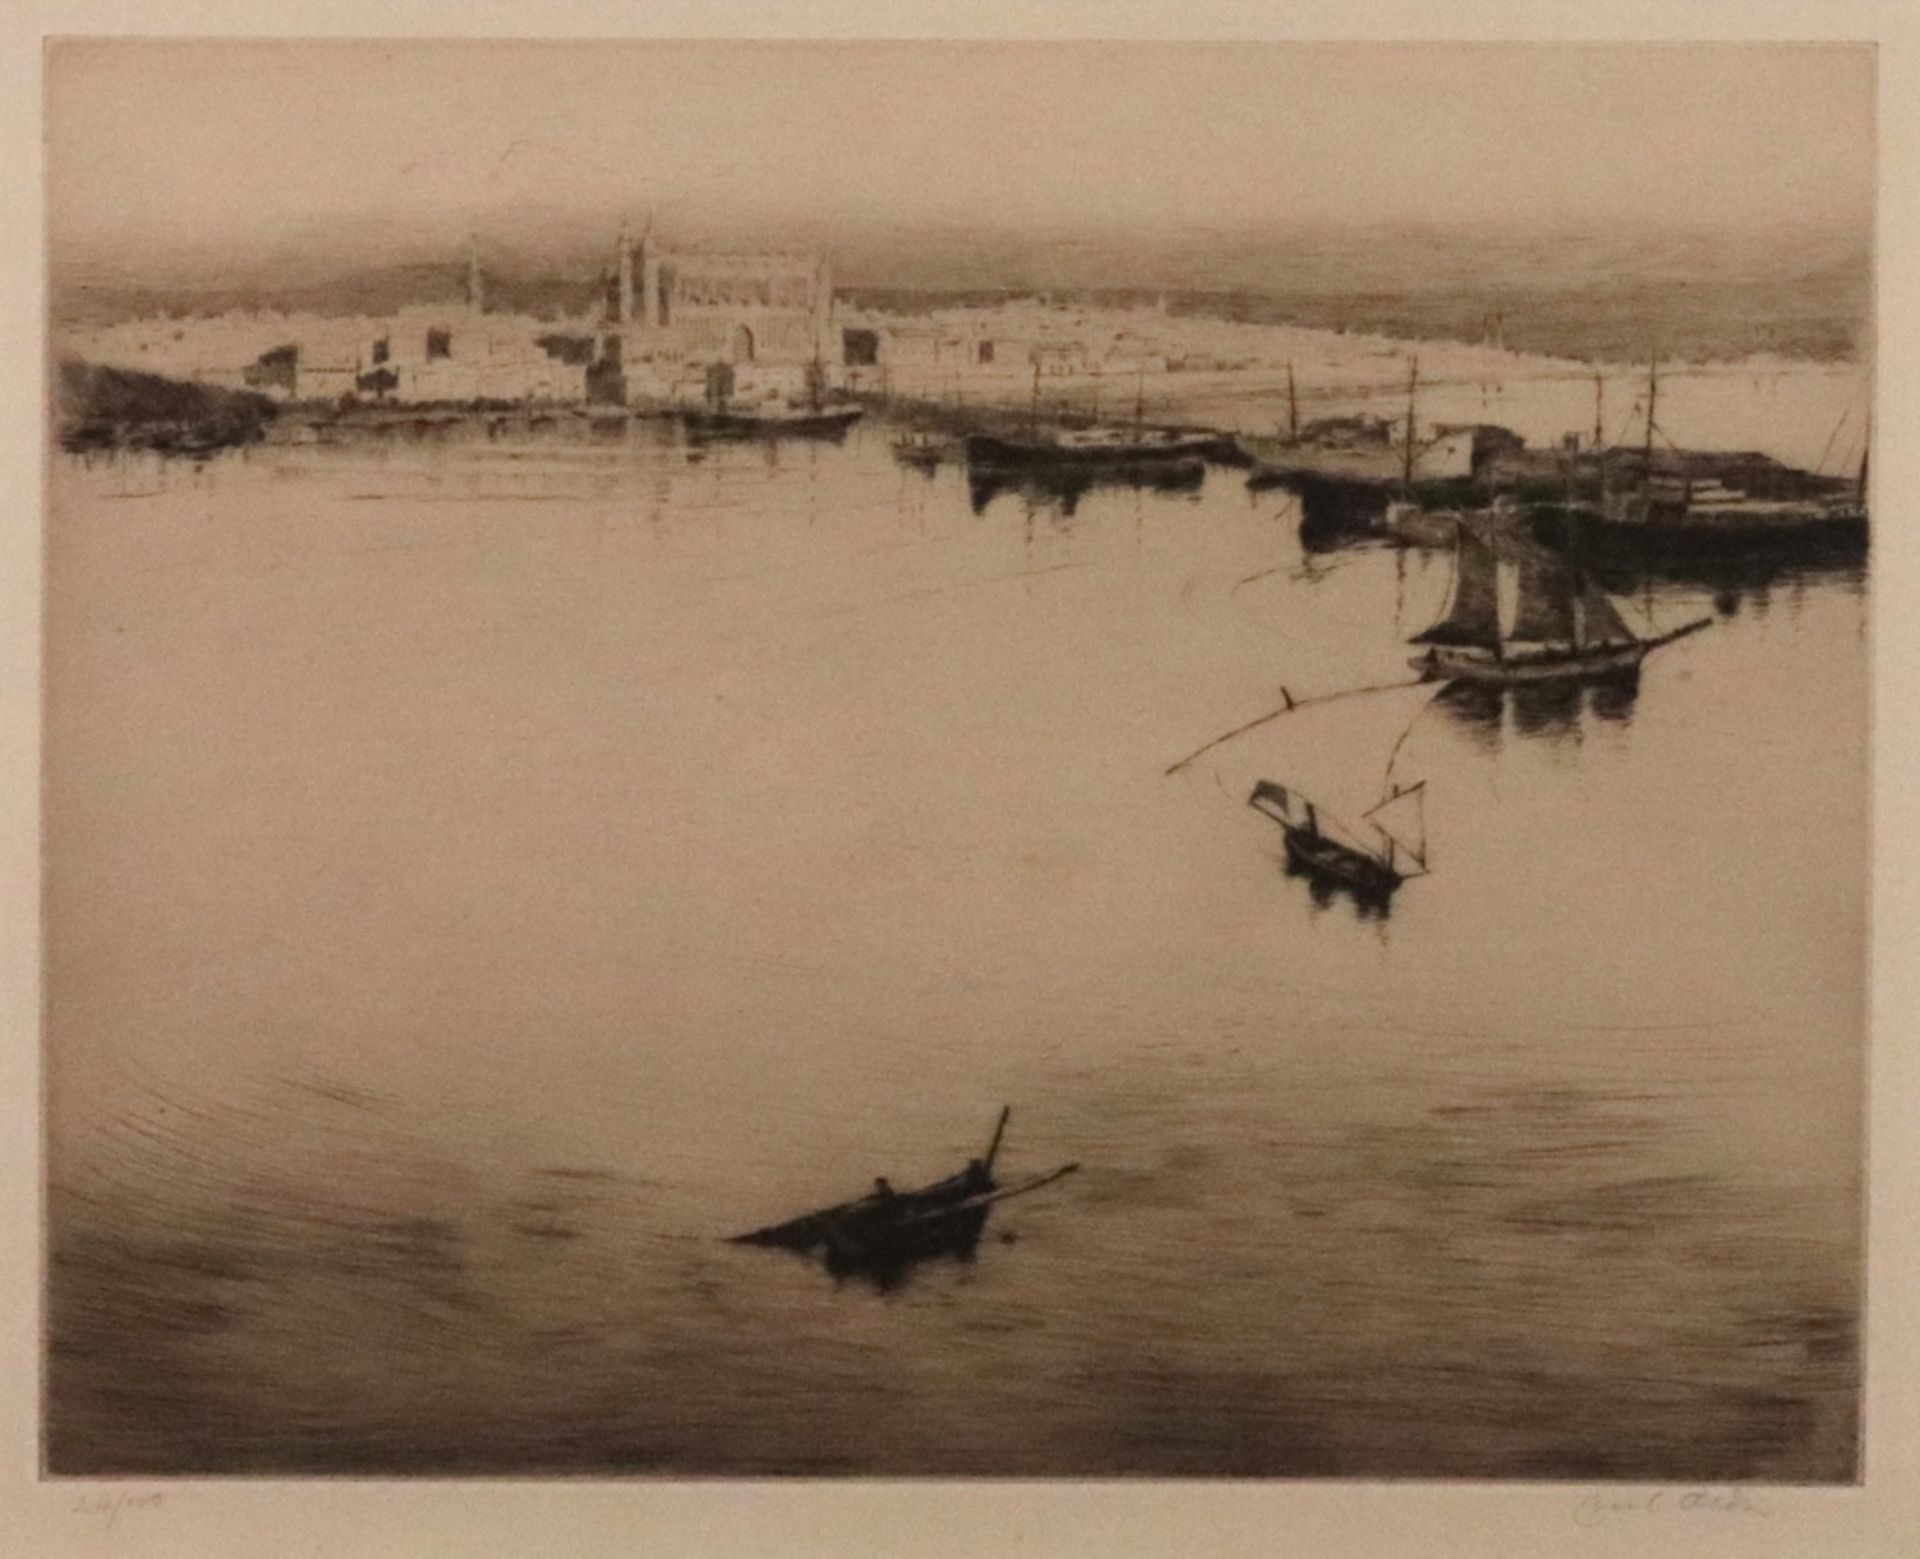 Cecil Aldin (British, 1870-1935), The Harbour, Palma, Majorca,